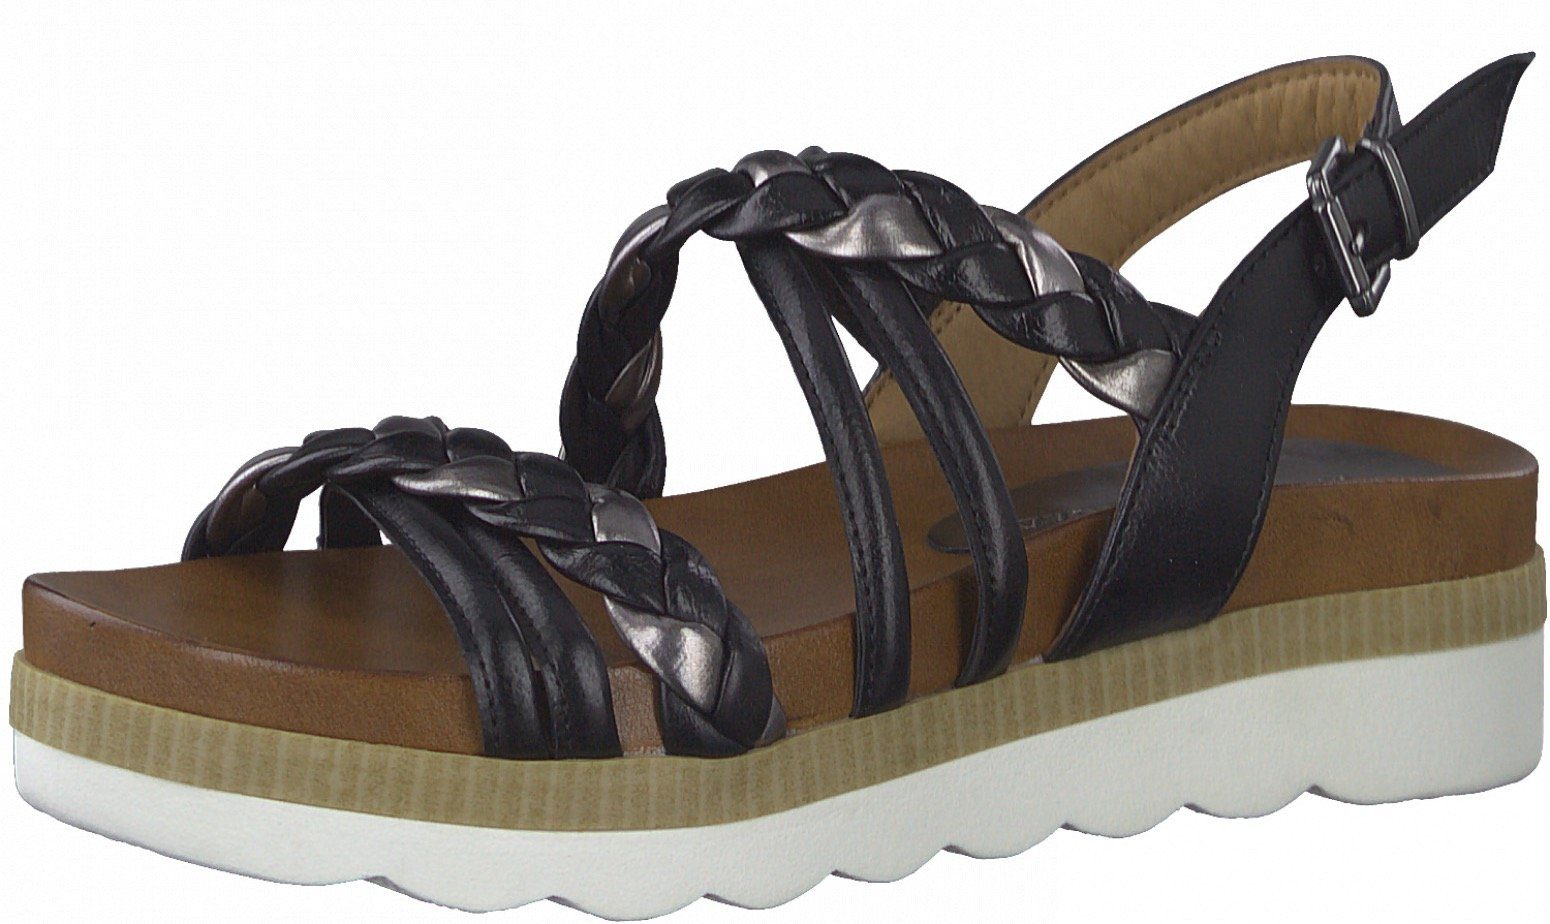 MARCO TOZZI Sandale mit schönen Metallic-Details schwarz-silberfarben | Riemchensandalen